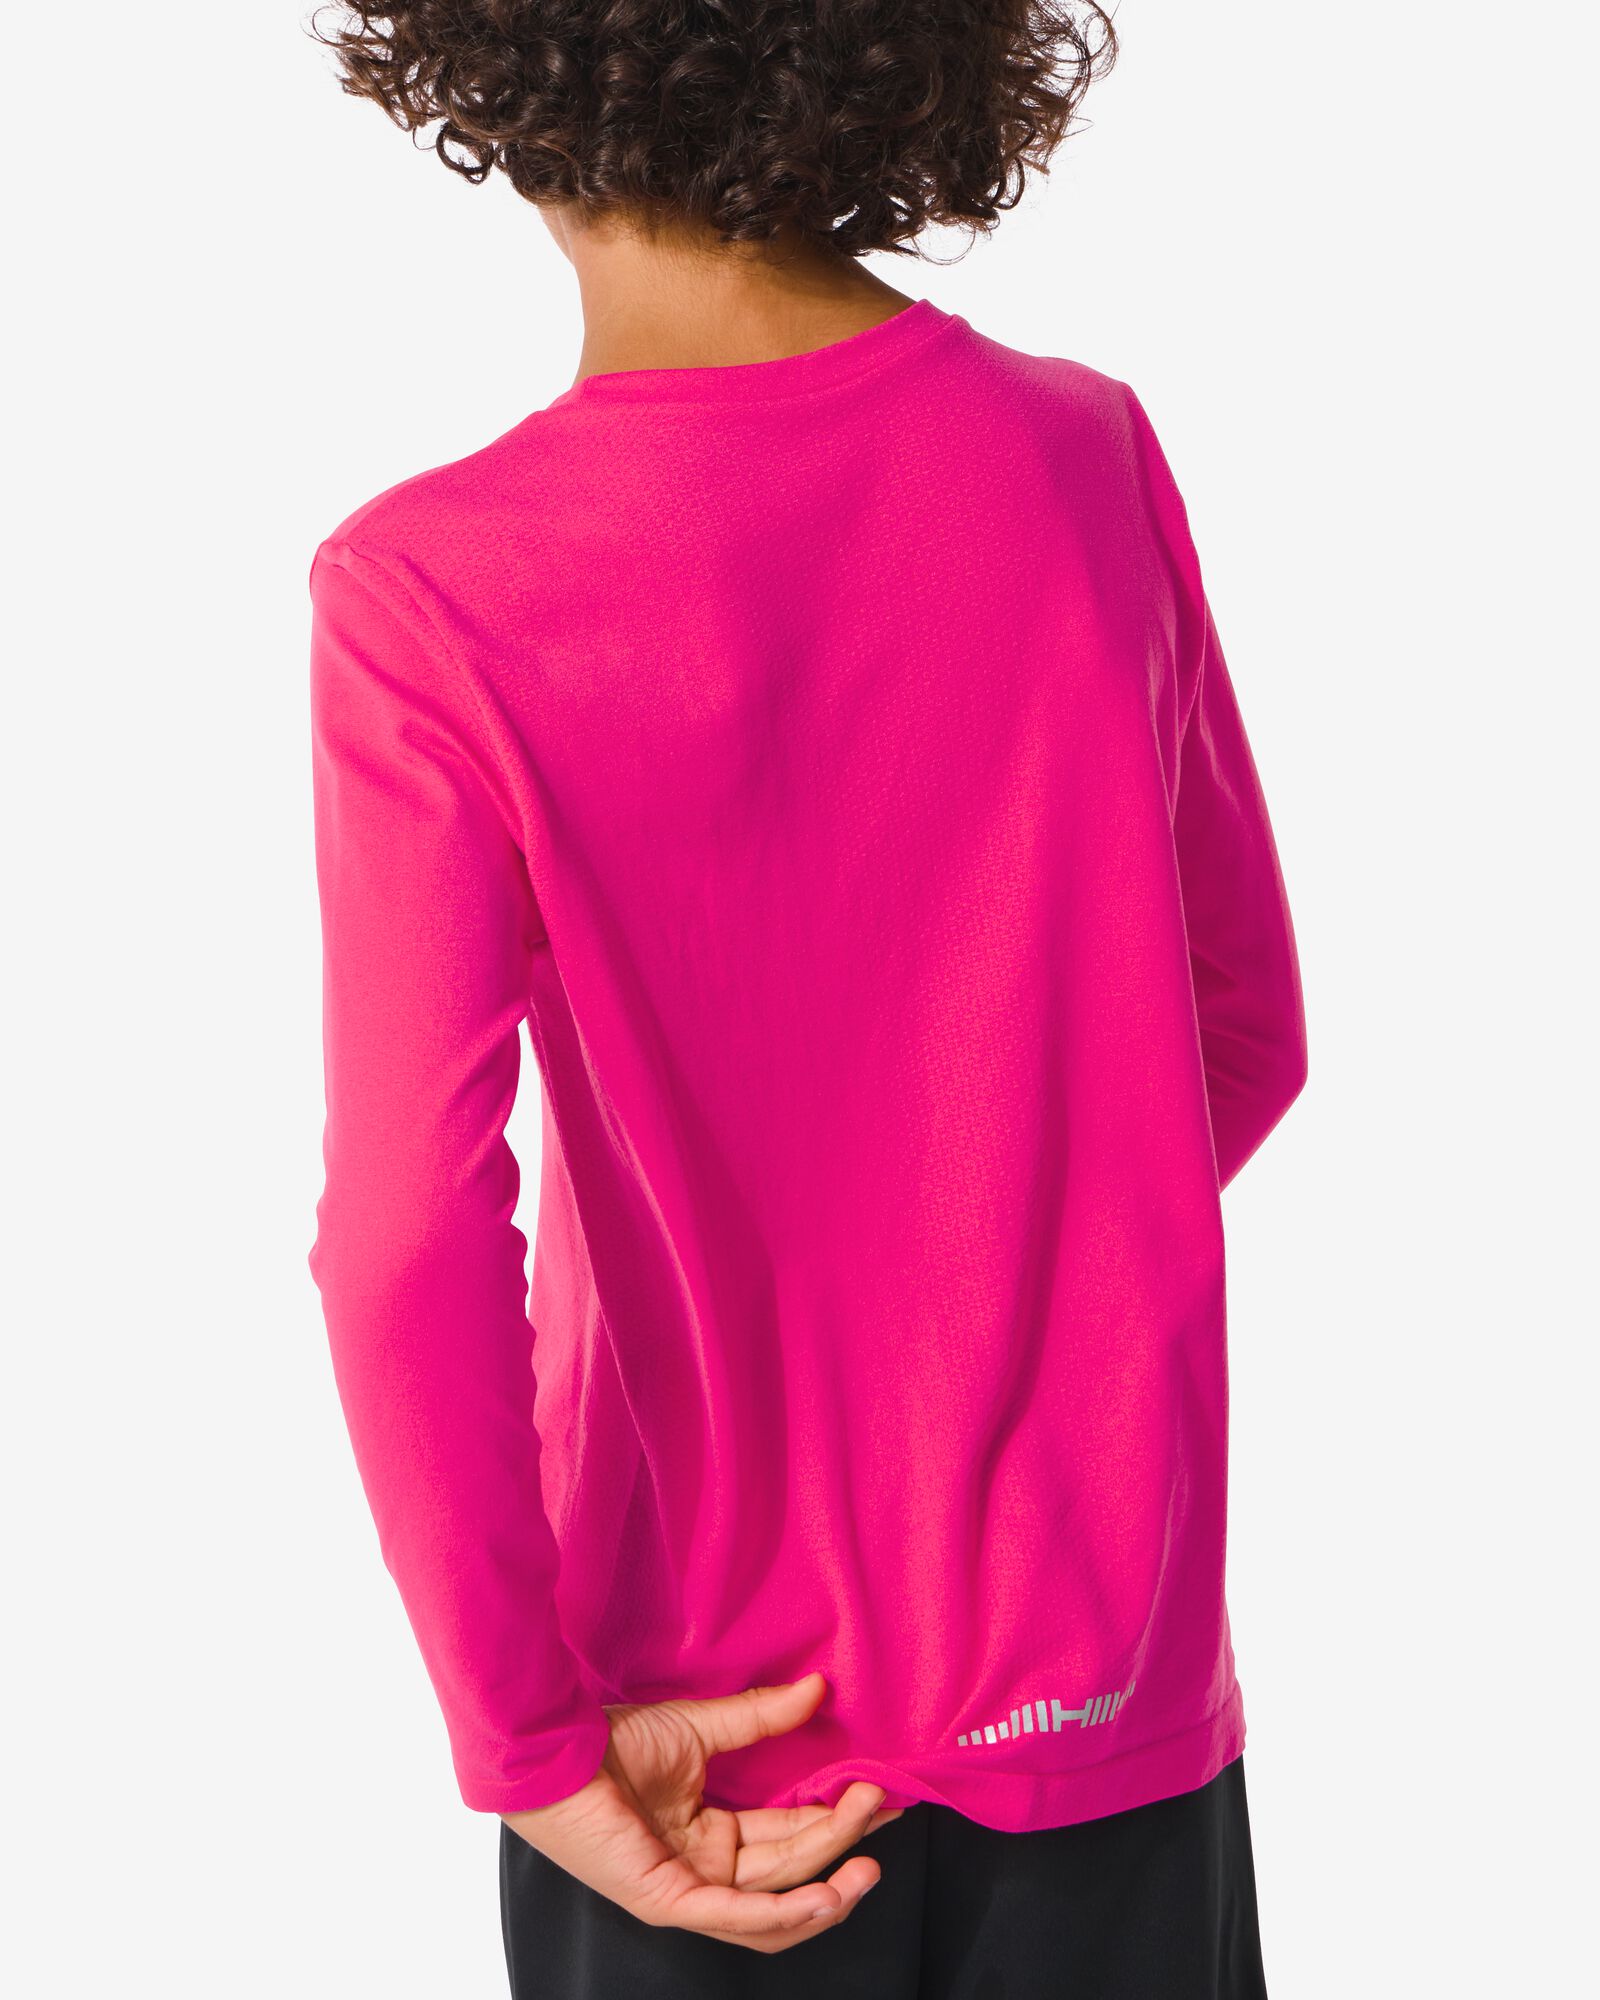 naadloos kinder sportshirt roze 110/116 - 36090361 - HEMA